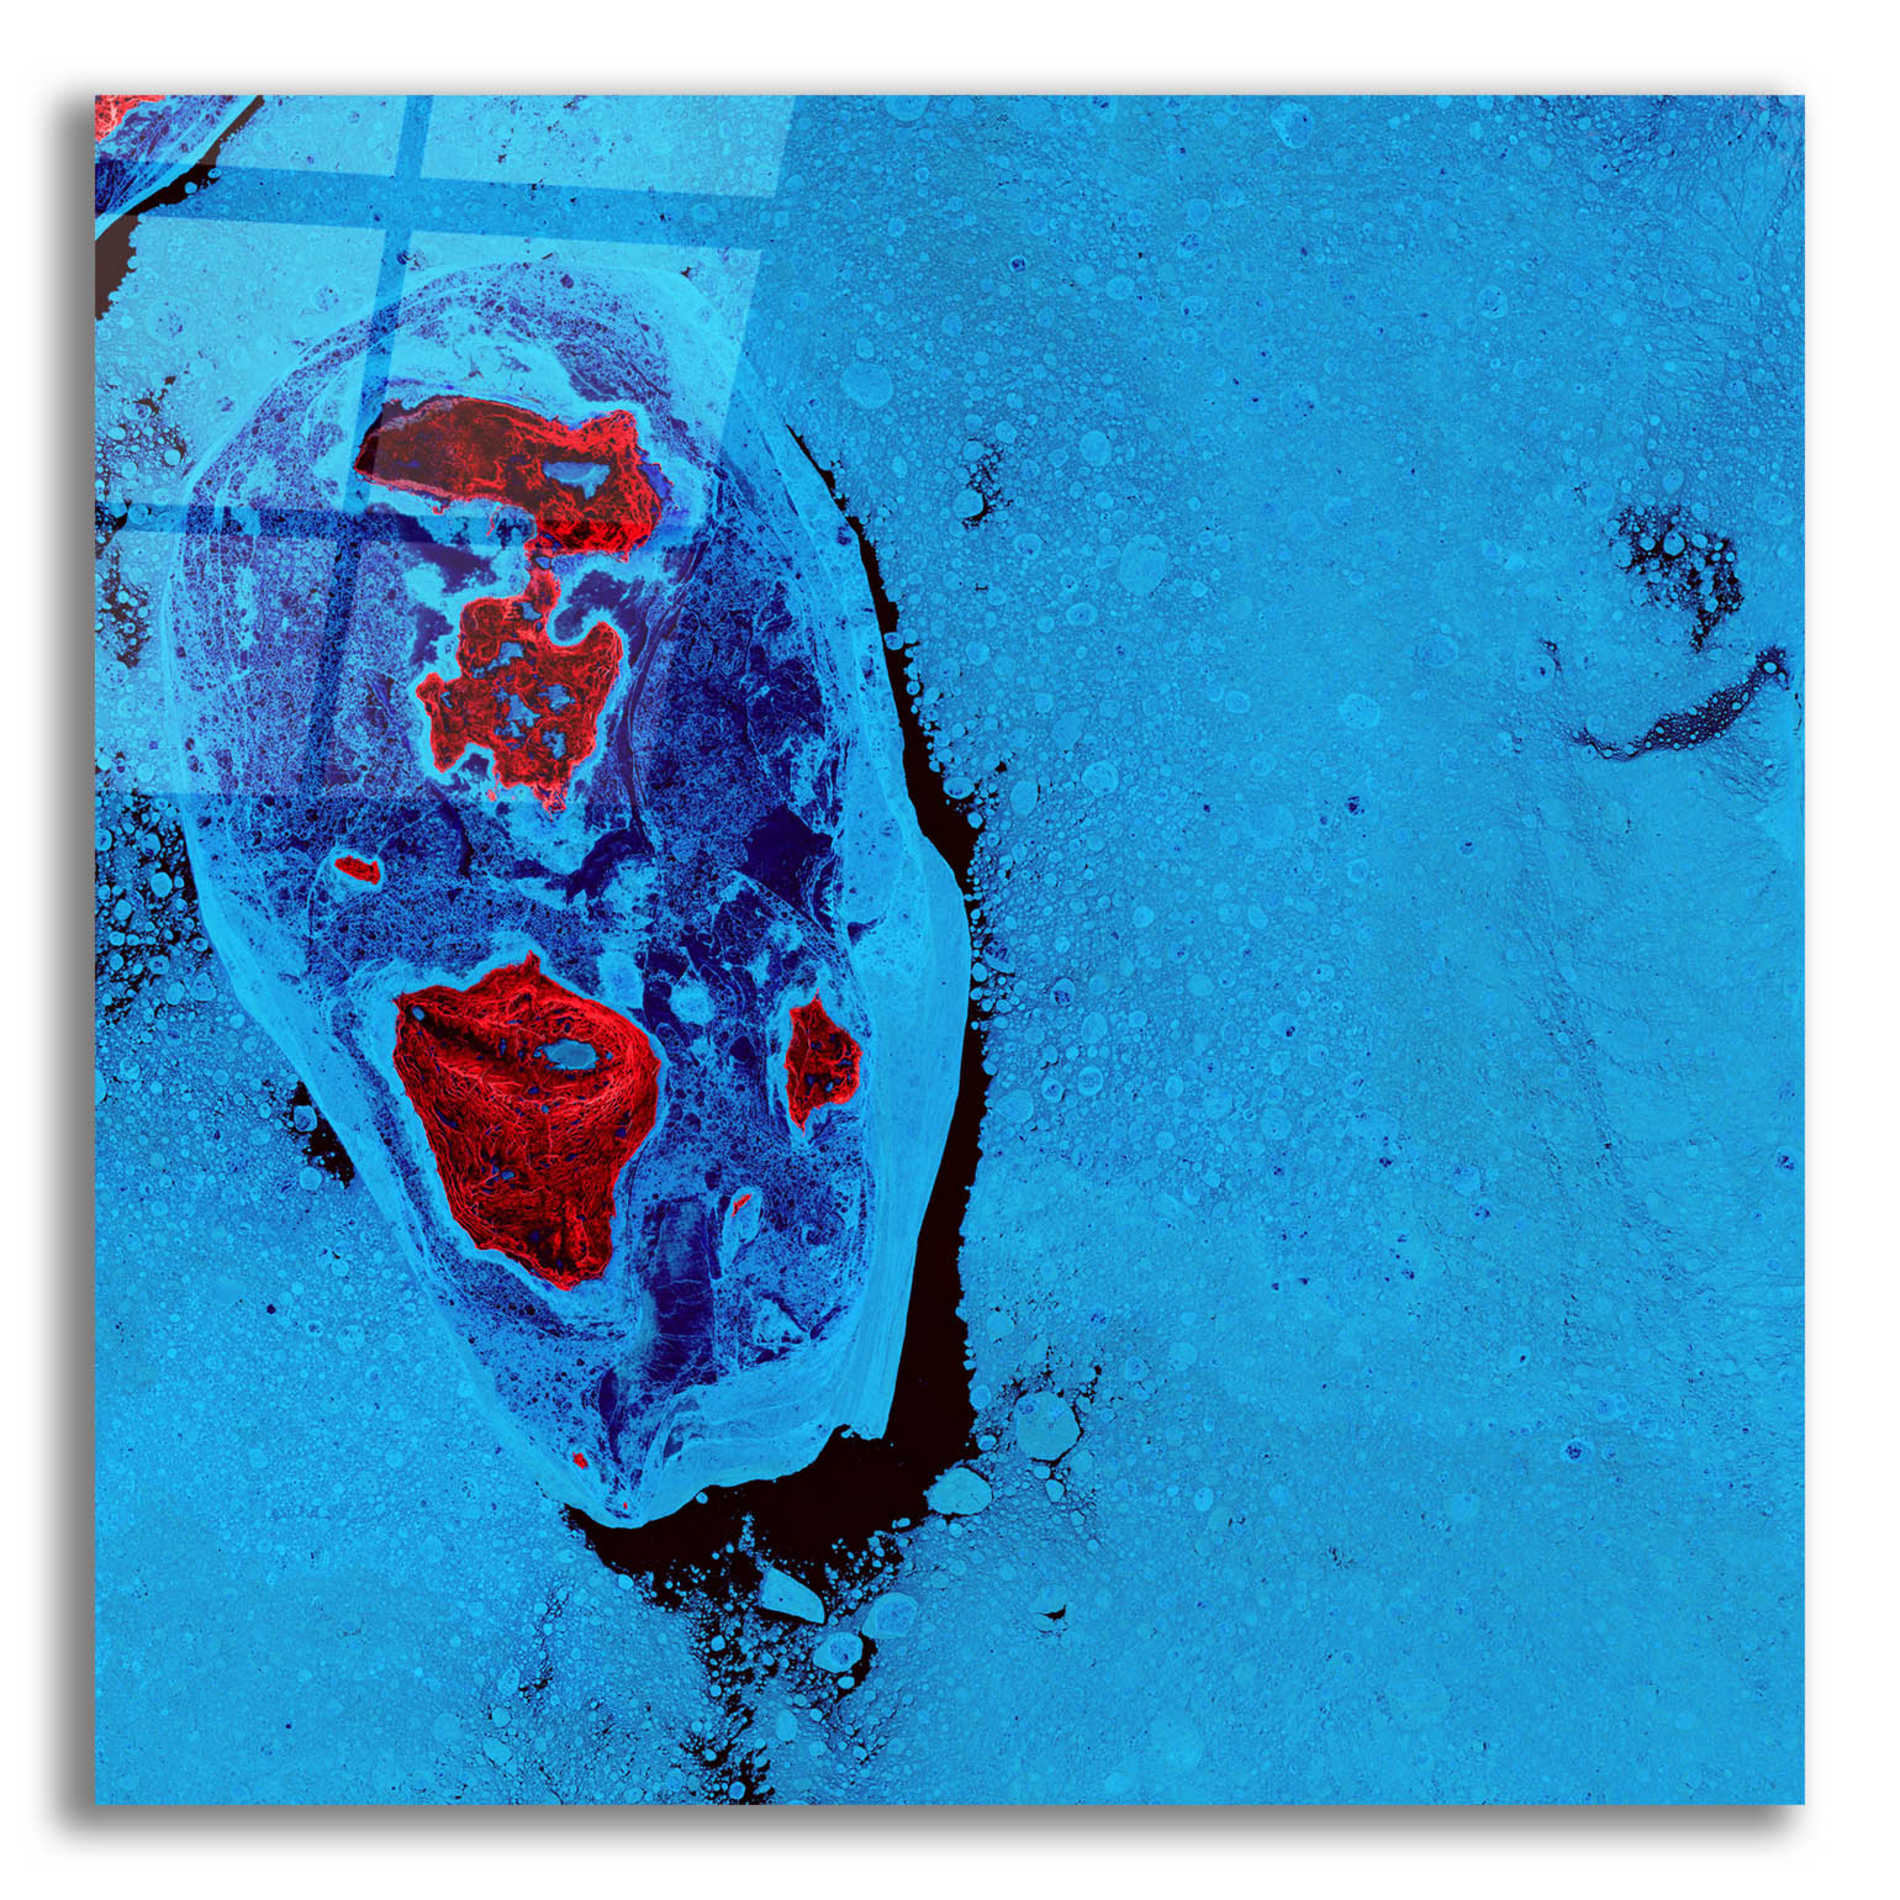 Epic Art 'Earth as Art: Cellular Ice,' Acrylic Glass Wall Art,12x12x1.1x0,18x18x1.1x0,26x26x1.74x0,37x37x1.74x0